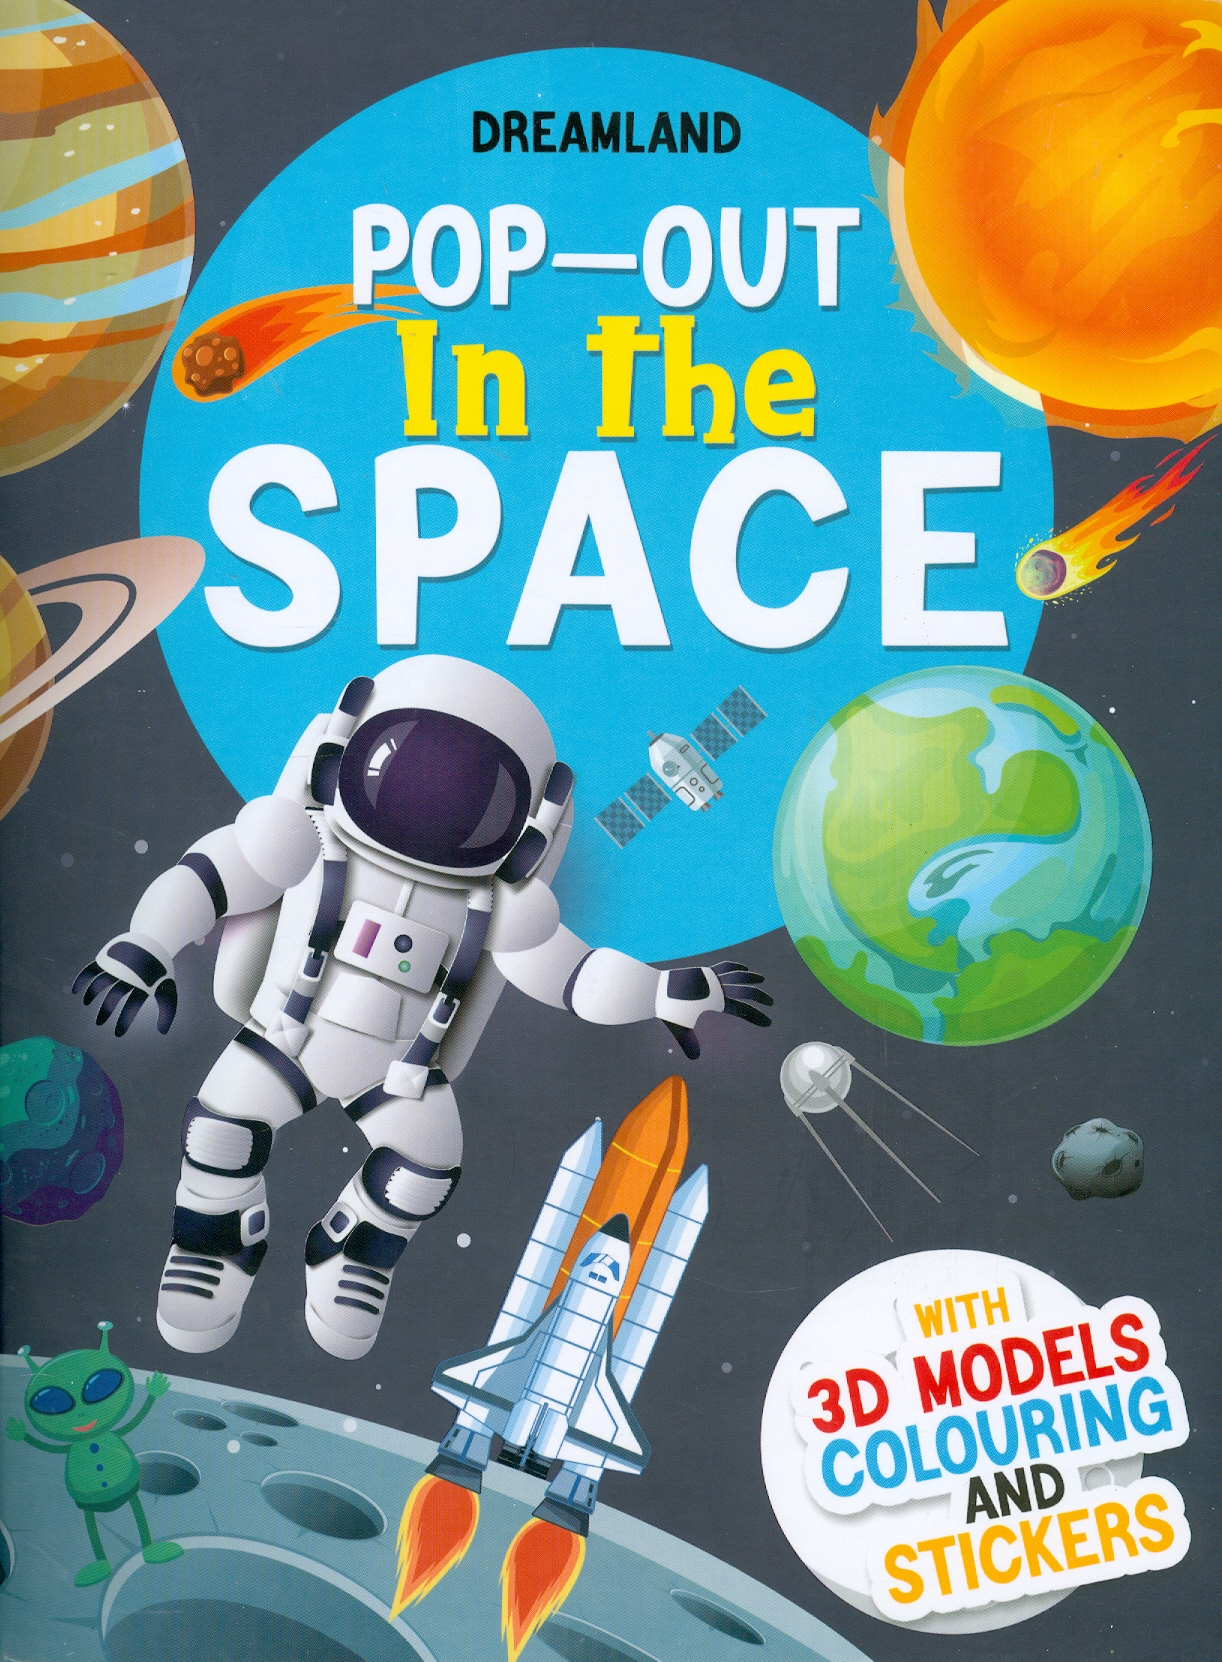 Pop-Out In The Space - With 3D Models Colouring And Stickers (Sách Bật Ra - Ngoài Vũ Trụ - Với Hình Dán Và Tô Màu Mô Hình 3D)